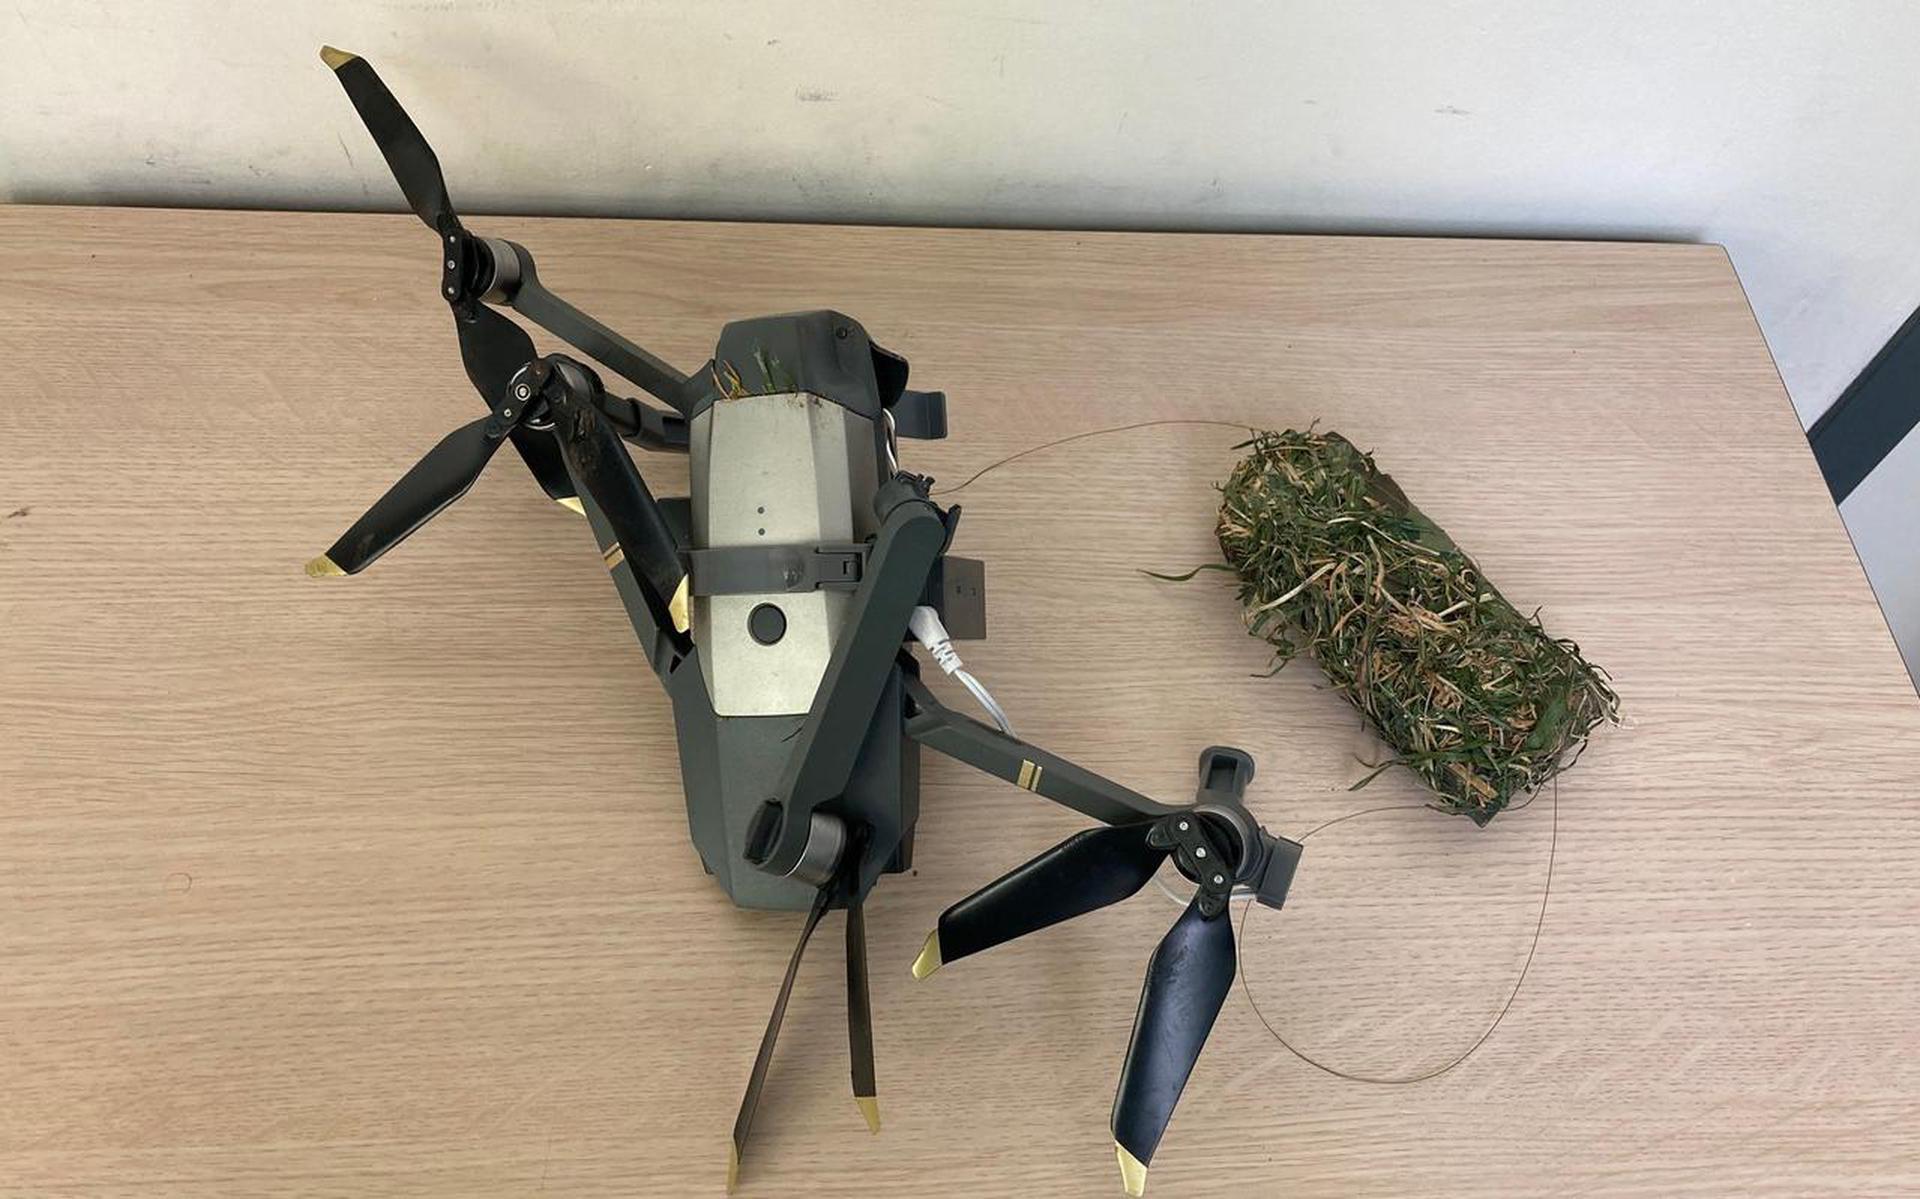 Deze drone crashte maart dit jaar bij PI Norgerhaven in Veenhuizen. In het pakketje, ook hier weer gecamoufleerd als graspol, zaten een i-Phone, laadsnoeren, 42 gram hasj en Viagrapillen.